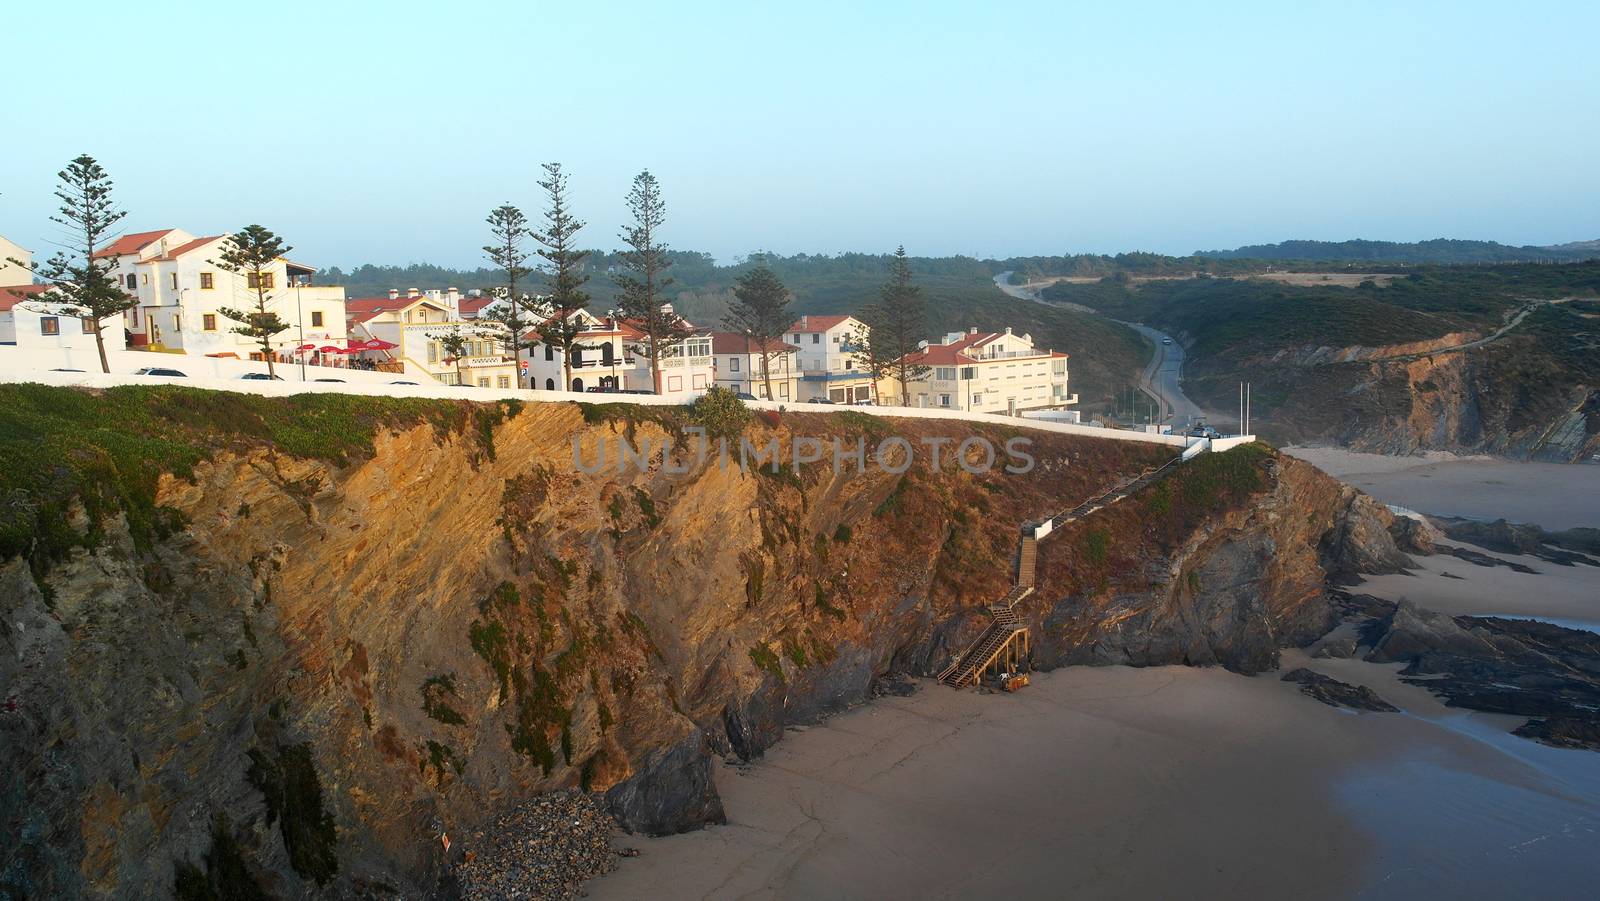 Zambujeira do Mar, Alentejo, Portugal by tiagoladeira